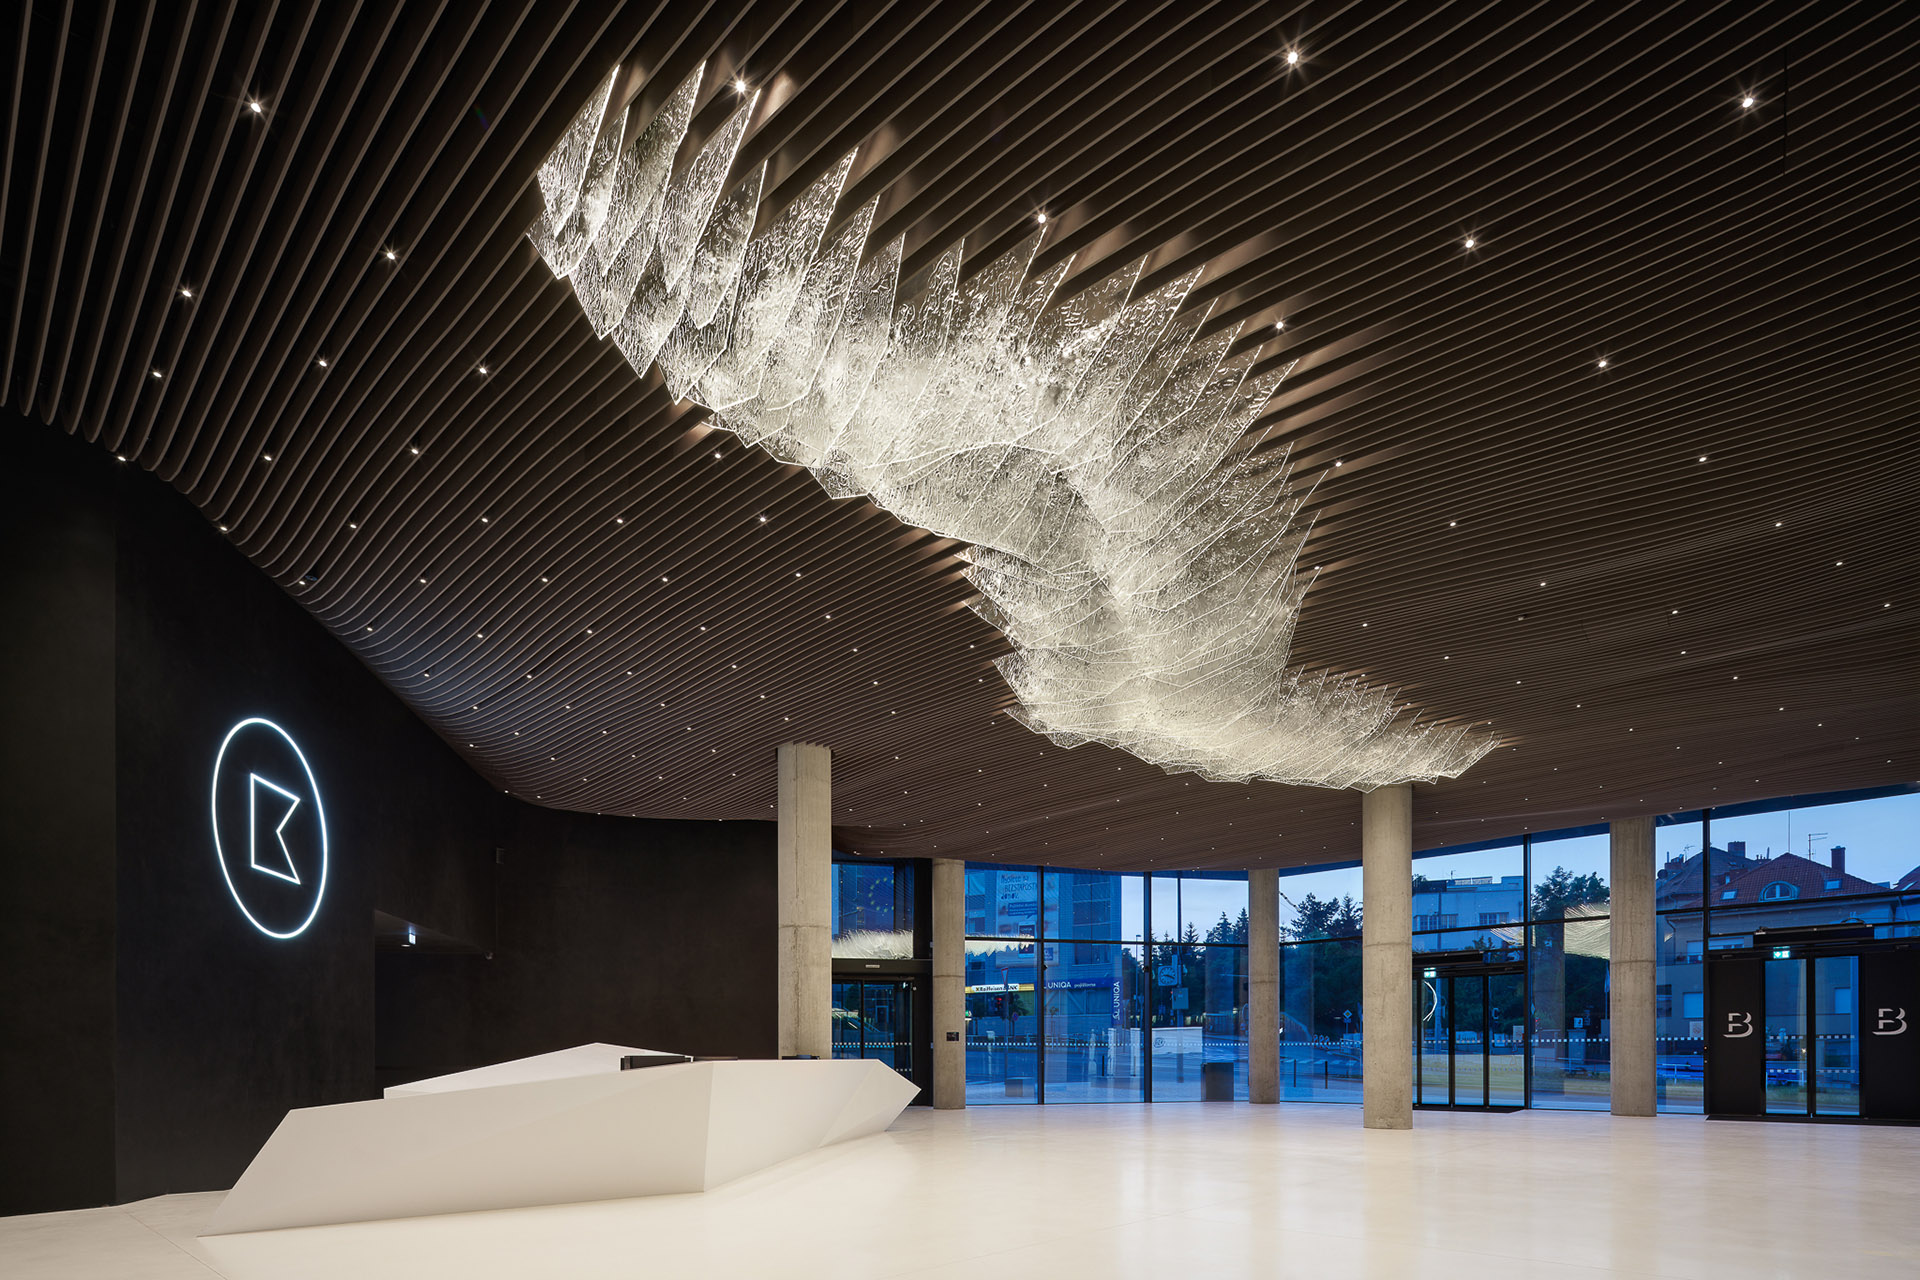 Podíleli jsme se na instalaci „Ledovce“, příběhu vyprávěného nad hlavami uživatelů  a návštěvníků centra Bořislavka